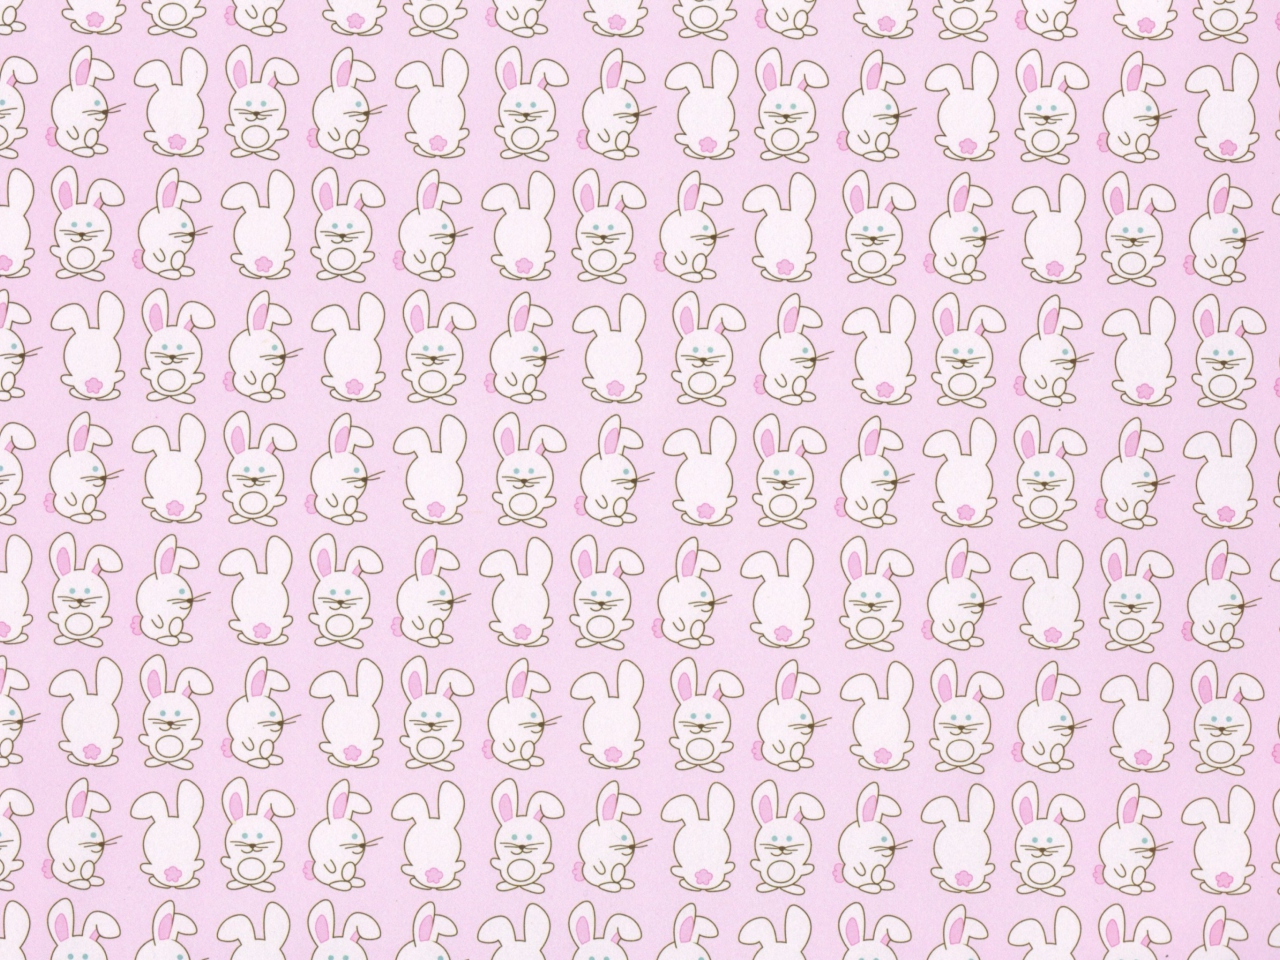 Pink Rabbits wallpaper 1280x960